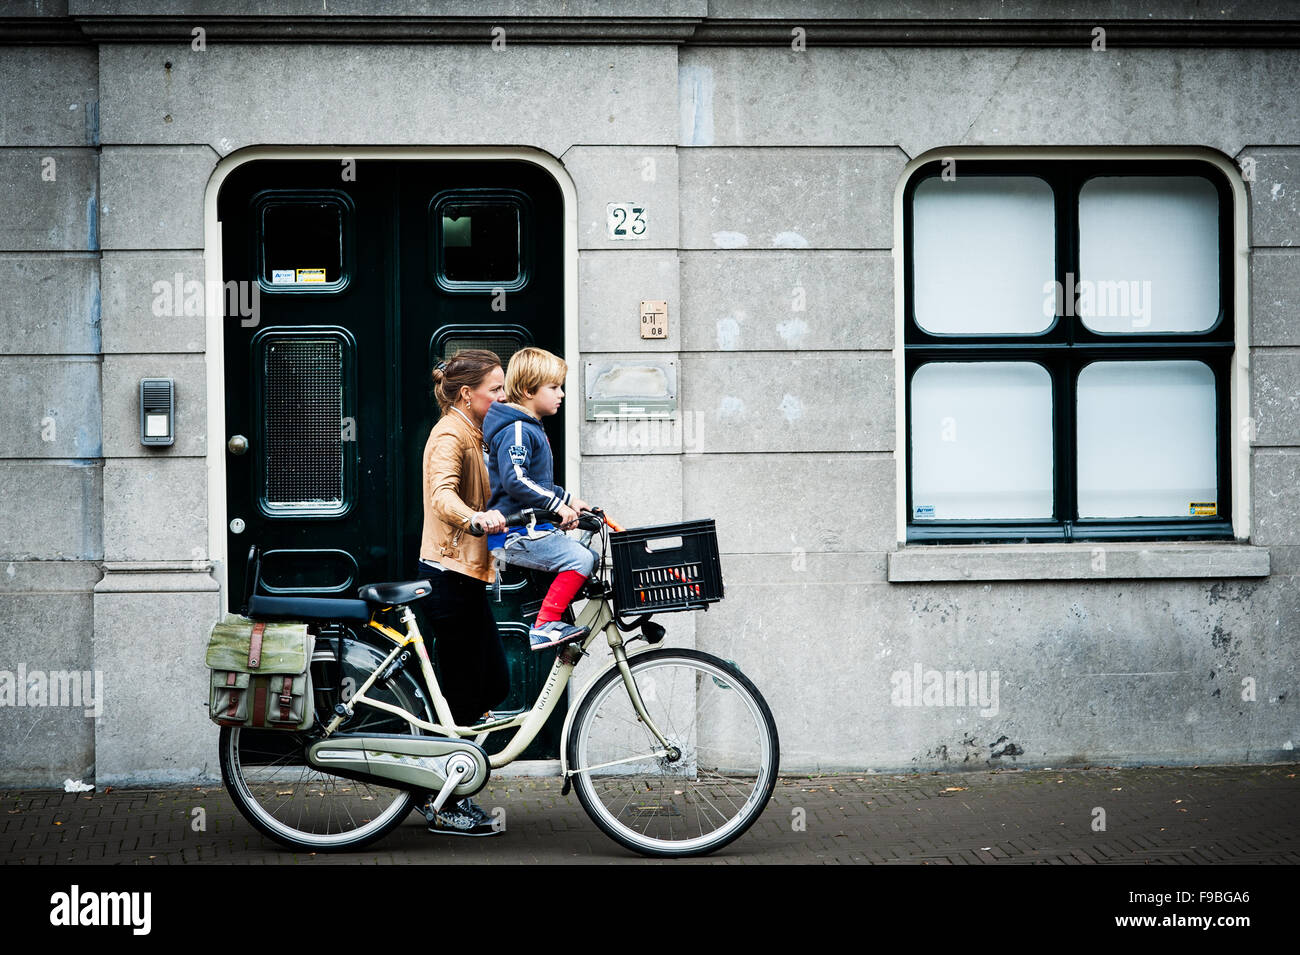 Una mujer caries a su hijo en su bicicleta, muy habitual ver en las calles holandesas. Foto de stock